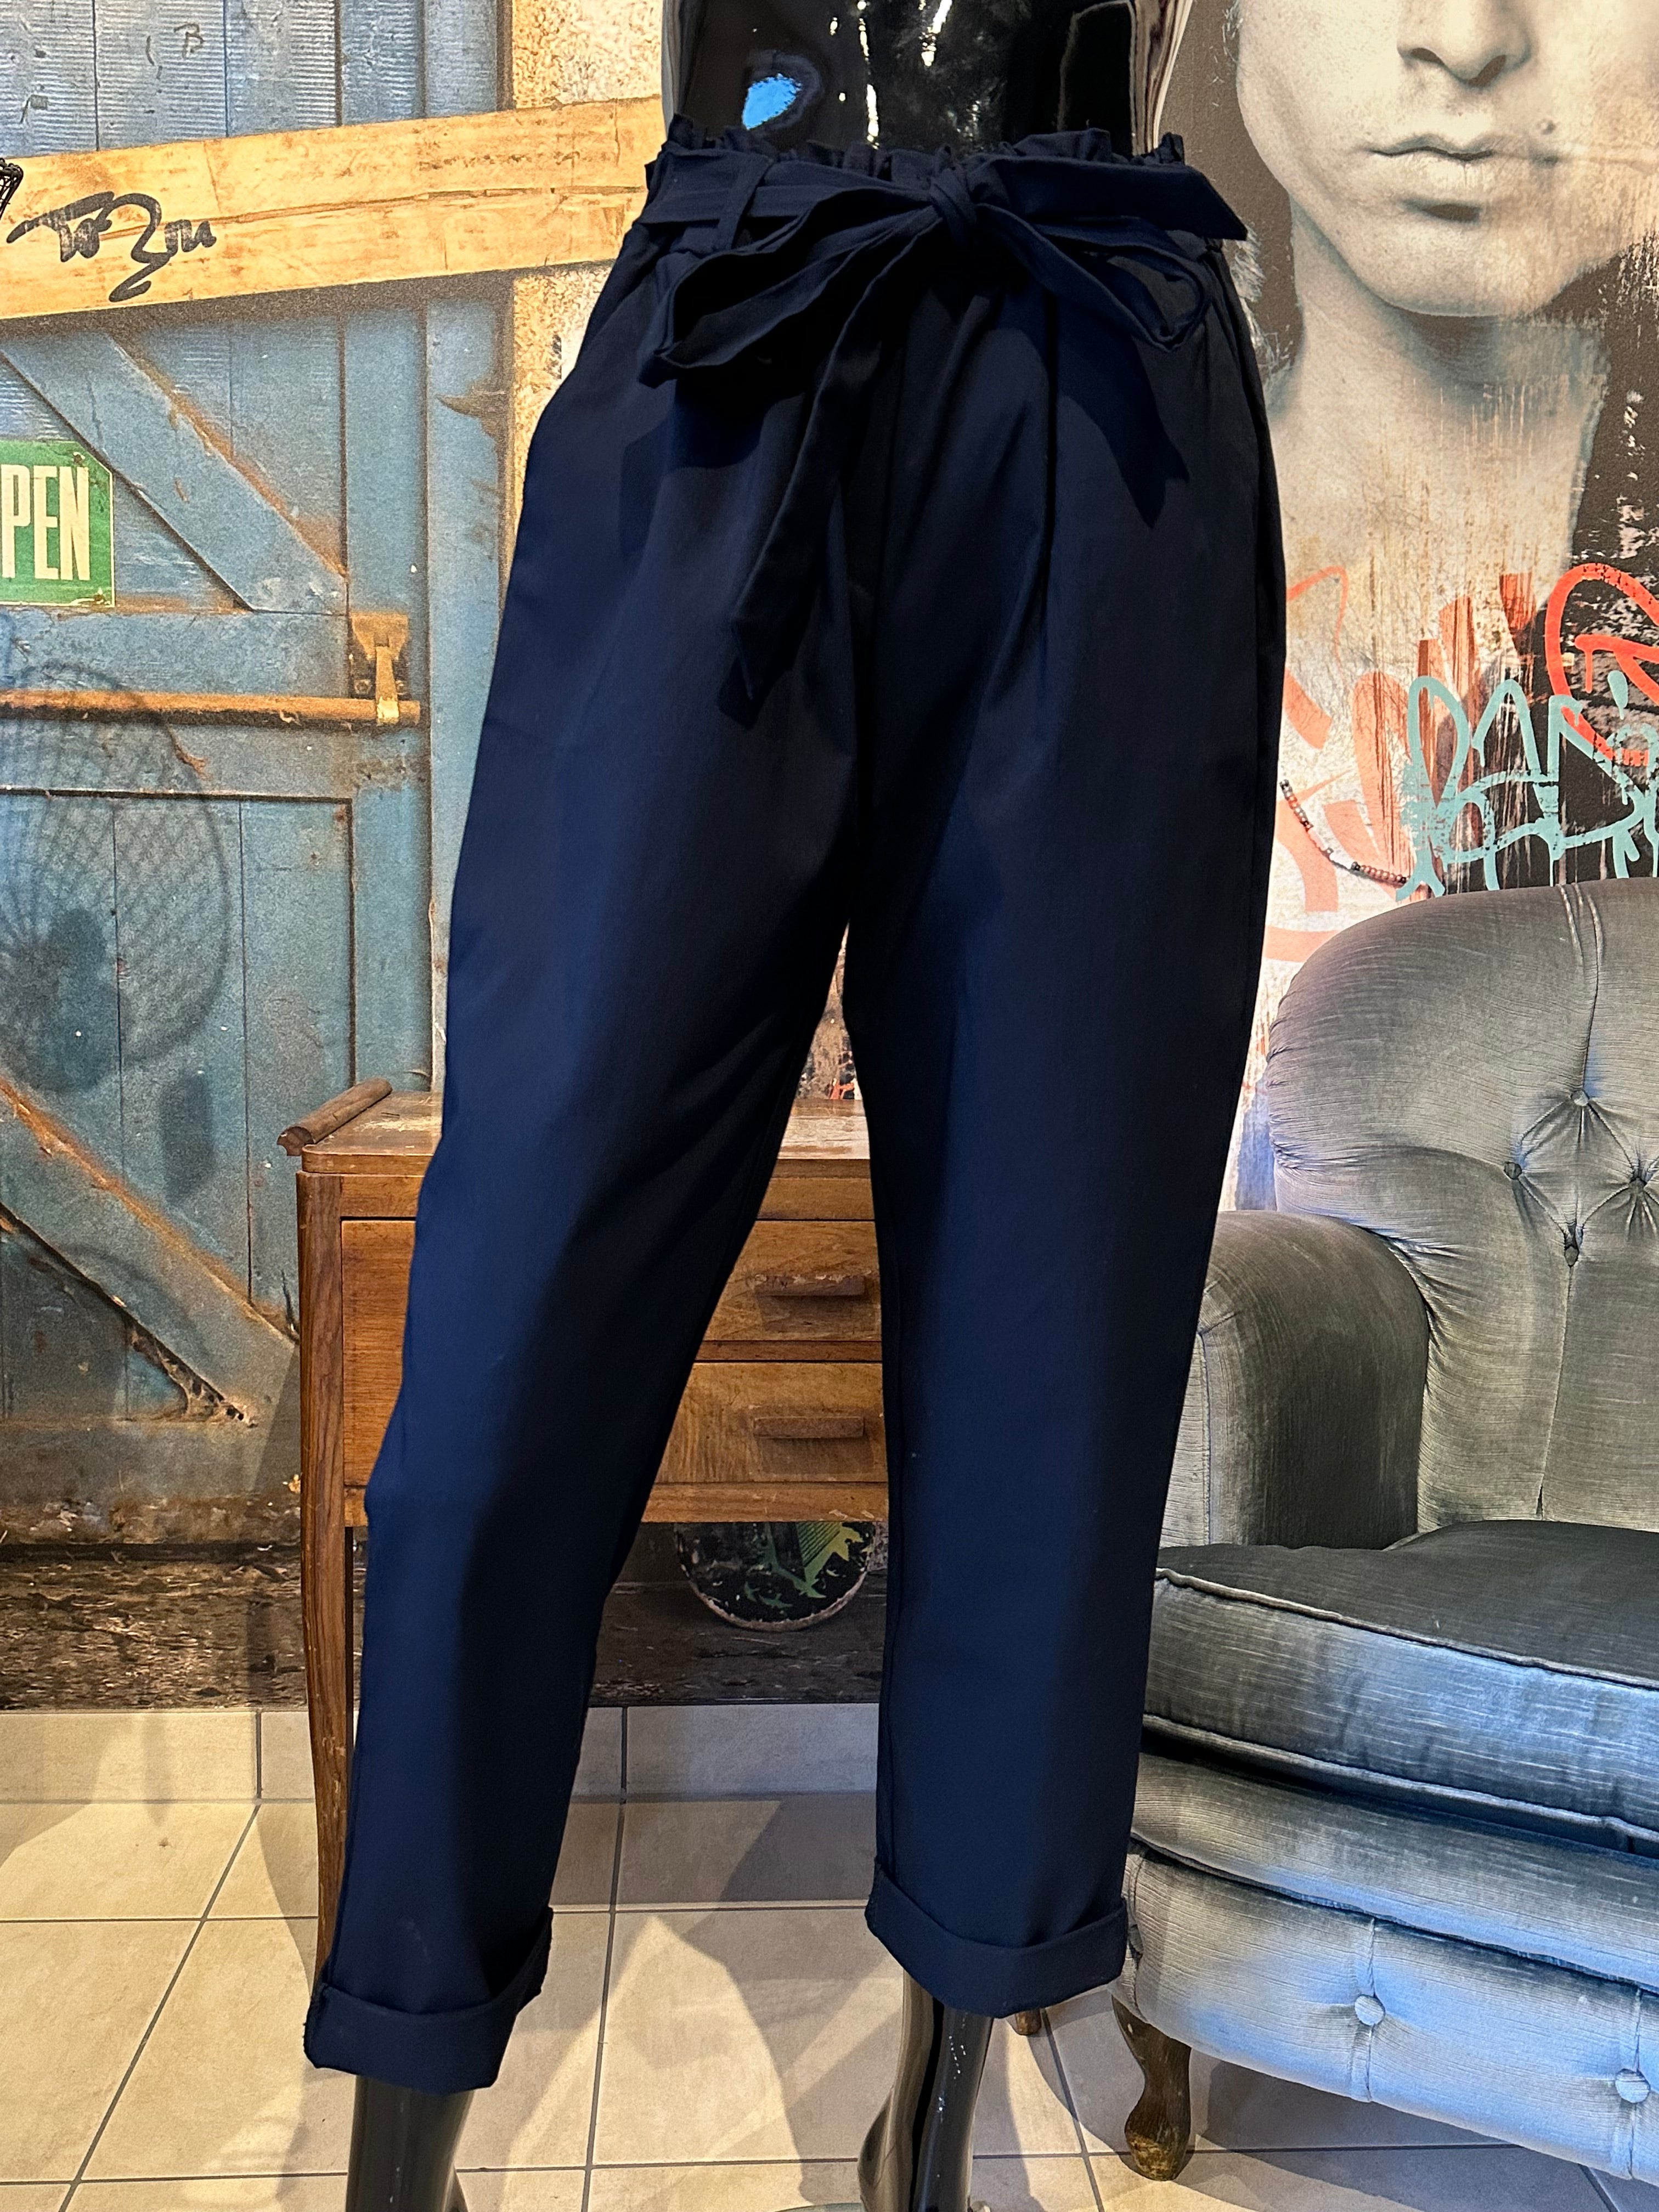 Pantalon taille élastique bleu marine taille 44/48